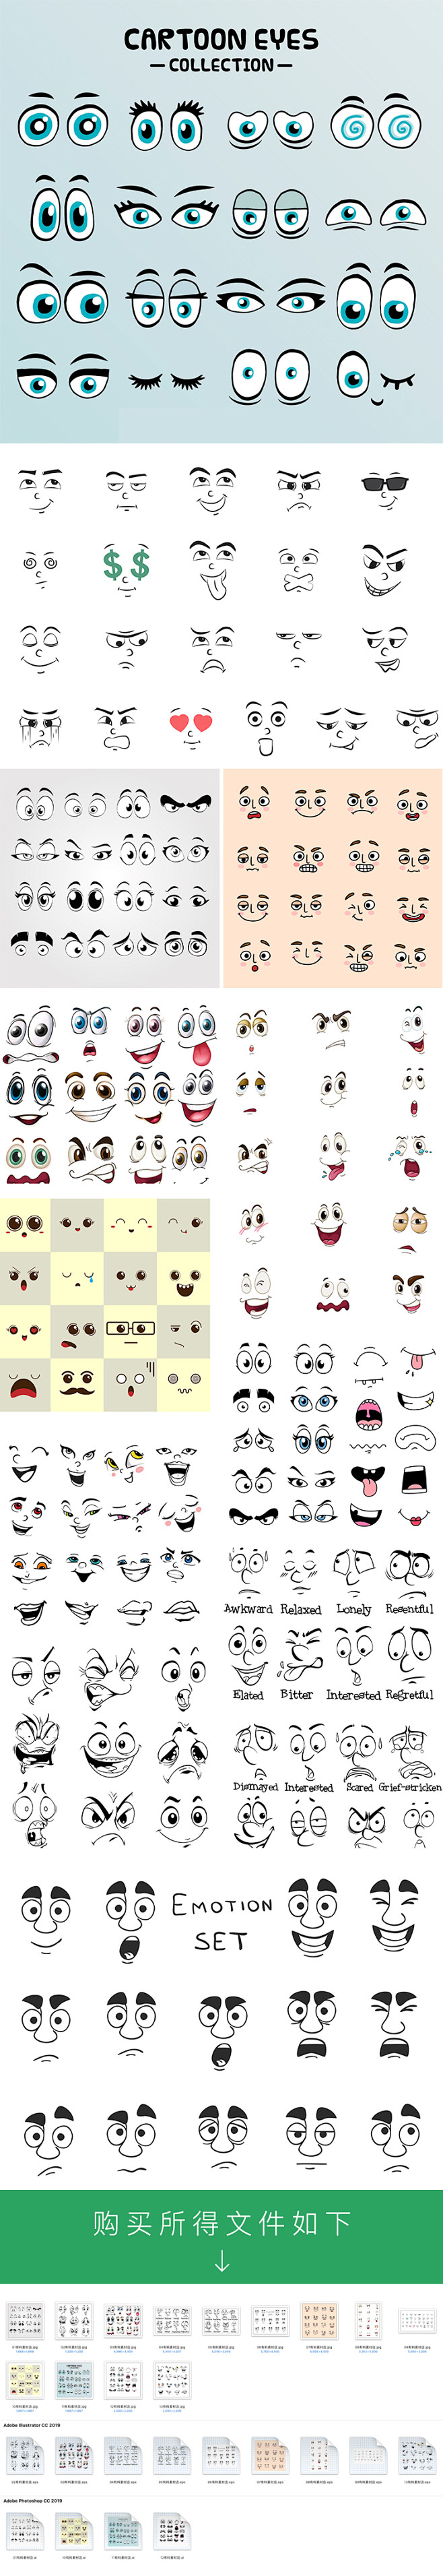 卡通可爱头像面部表情变换ai矢量素材手绘人物五官笑脸动作s419